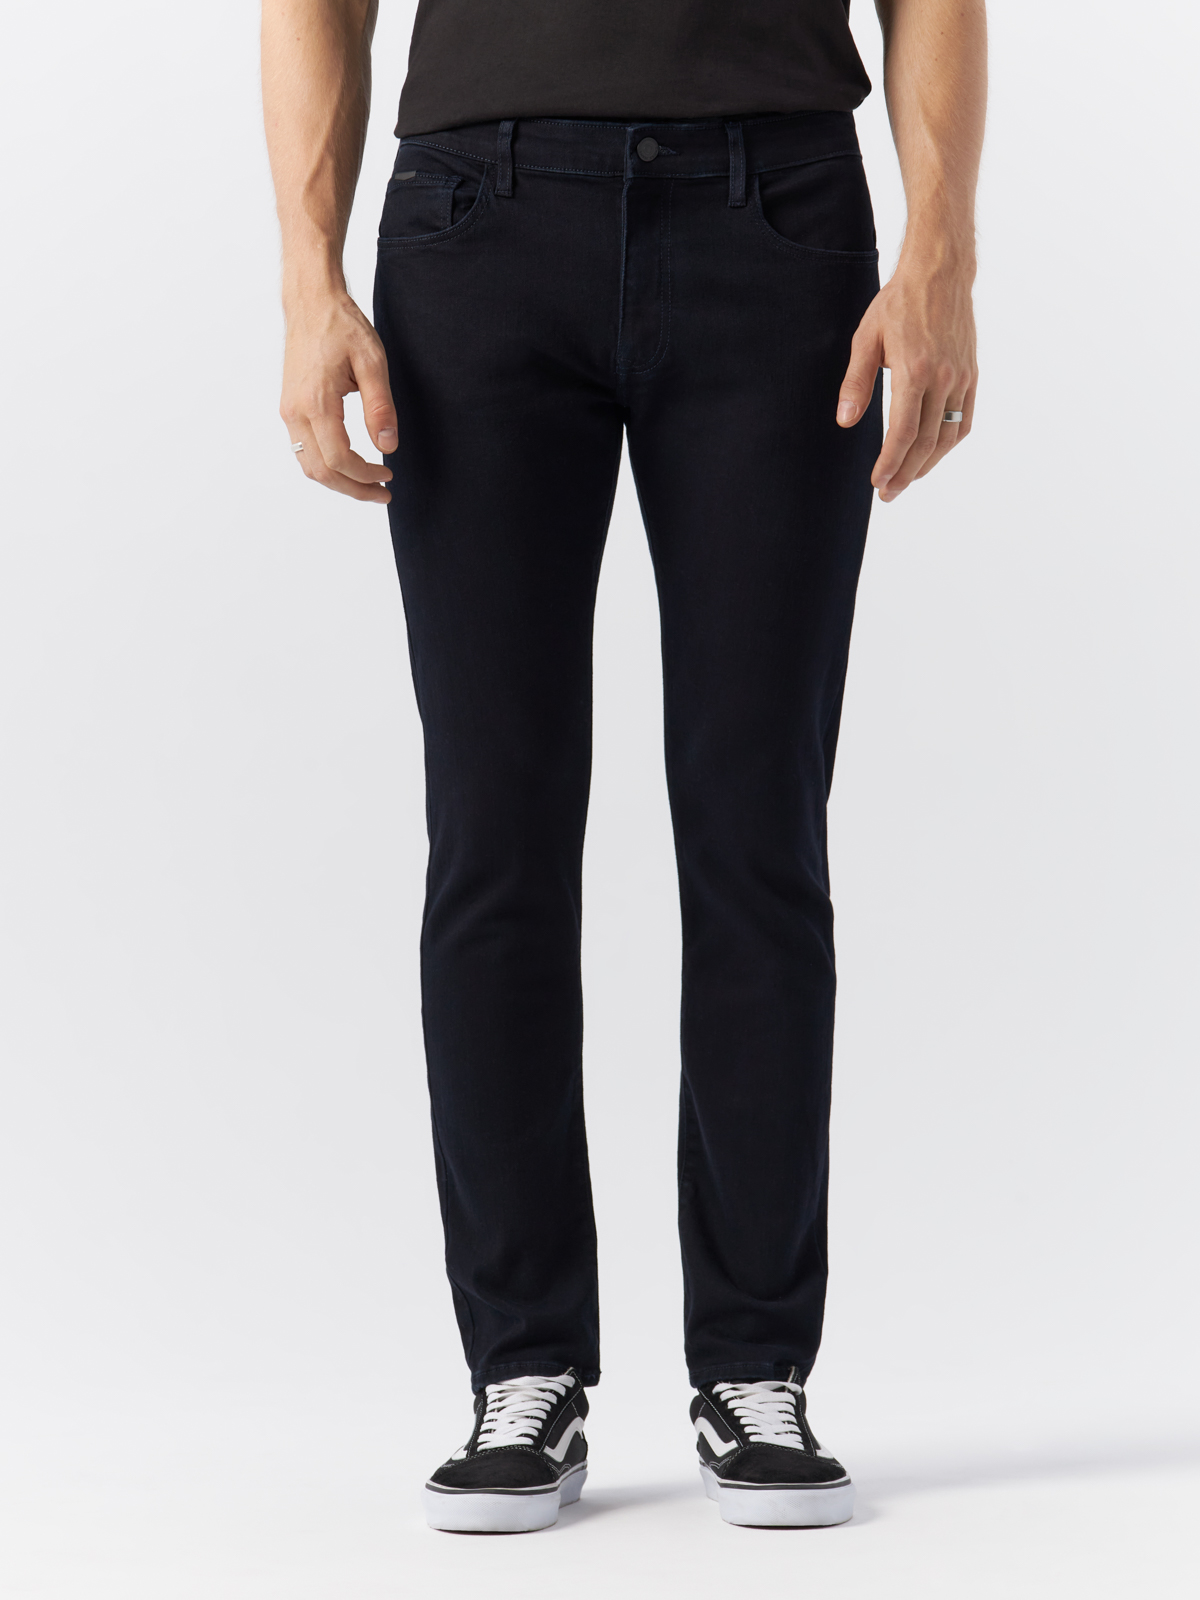 Джинсы Cross Jeans для мужчин, E 185-169, размер 29-30, чёрные